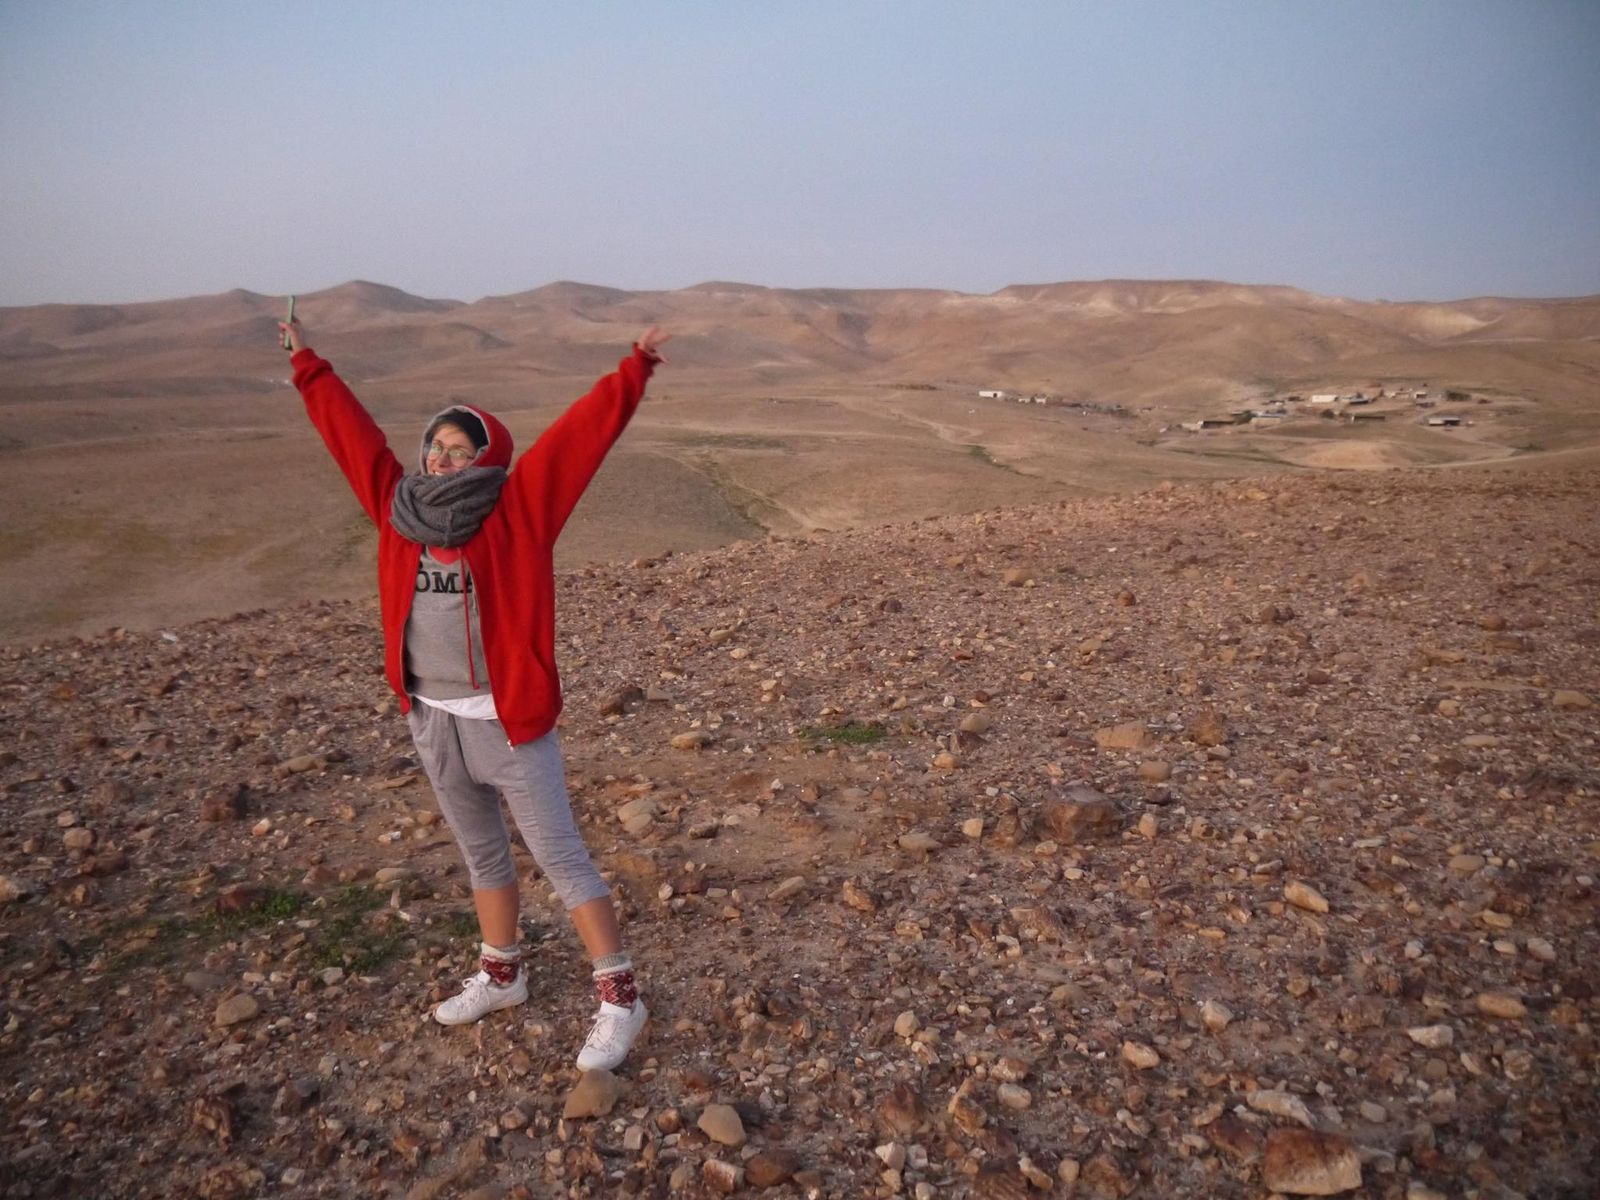   Izrael. Młoda kobieta, ubrana w czerwoną kurtkę, stoi na pustyni. Jest radosna, ma uniesione w górę ręce.   